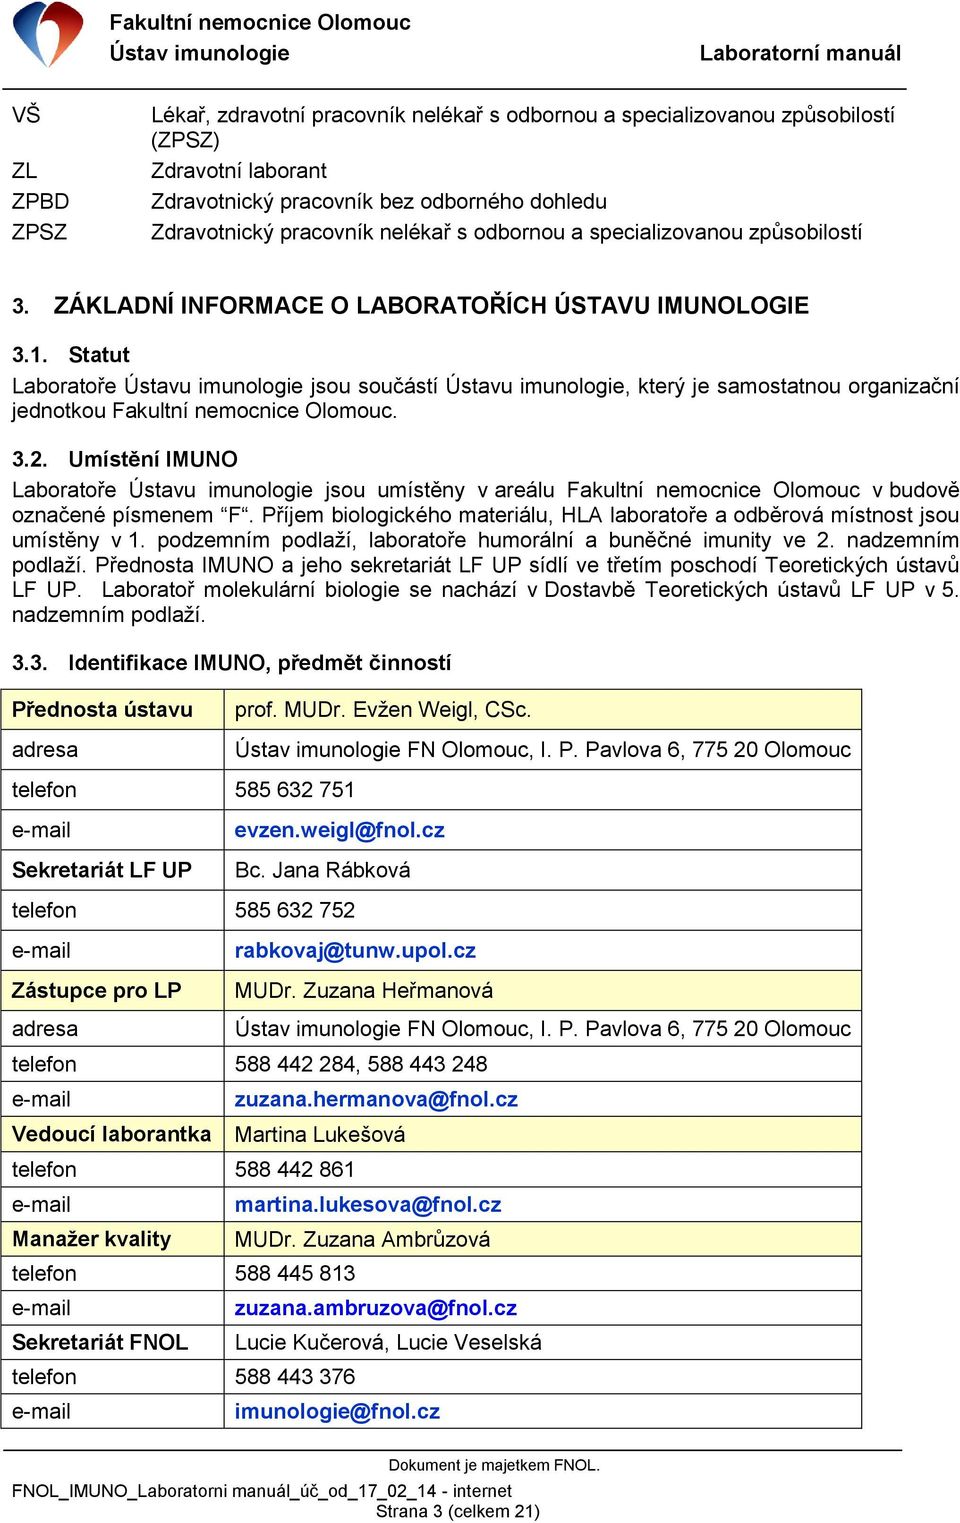 Statut Laboratoře Ústavu imunologie jsou součástí Ústavu imunologie, který je samostatnou organizační jednotkou Fakultní nemocnice Olomouc. 3.2.